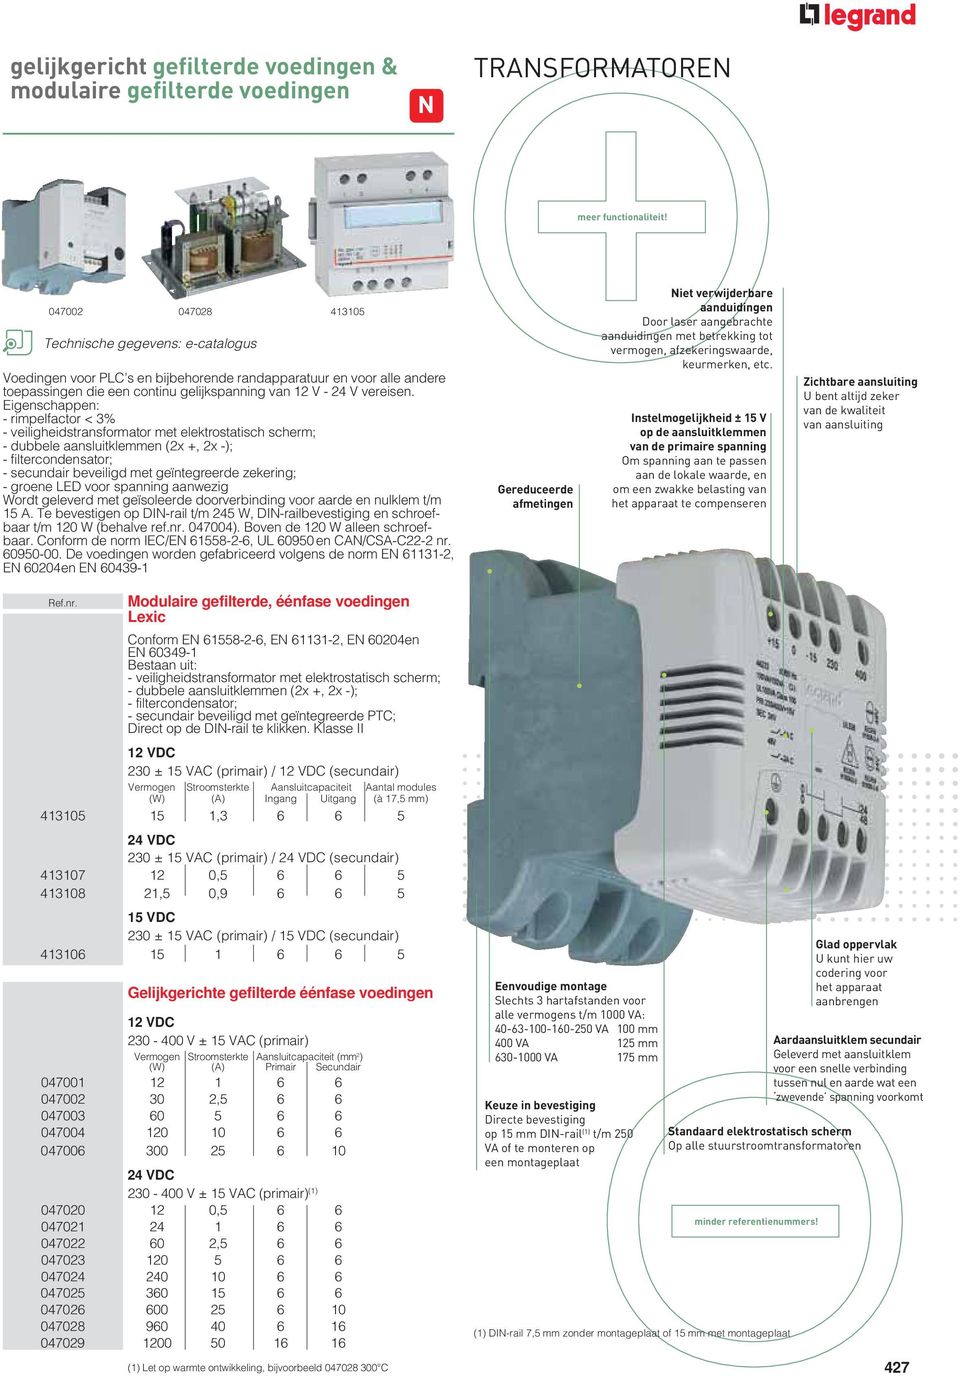 Eigenschappen: - rimpelfactor < 3% - veiligheidstransformator met elektrostatisch scherm; - dubbele aansluitklemmen (2x +, 2x -); - filtercondensator; - secundair beveiligd met geïntegreerde